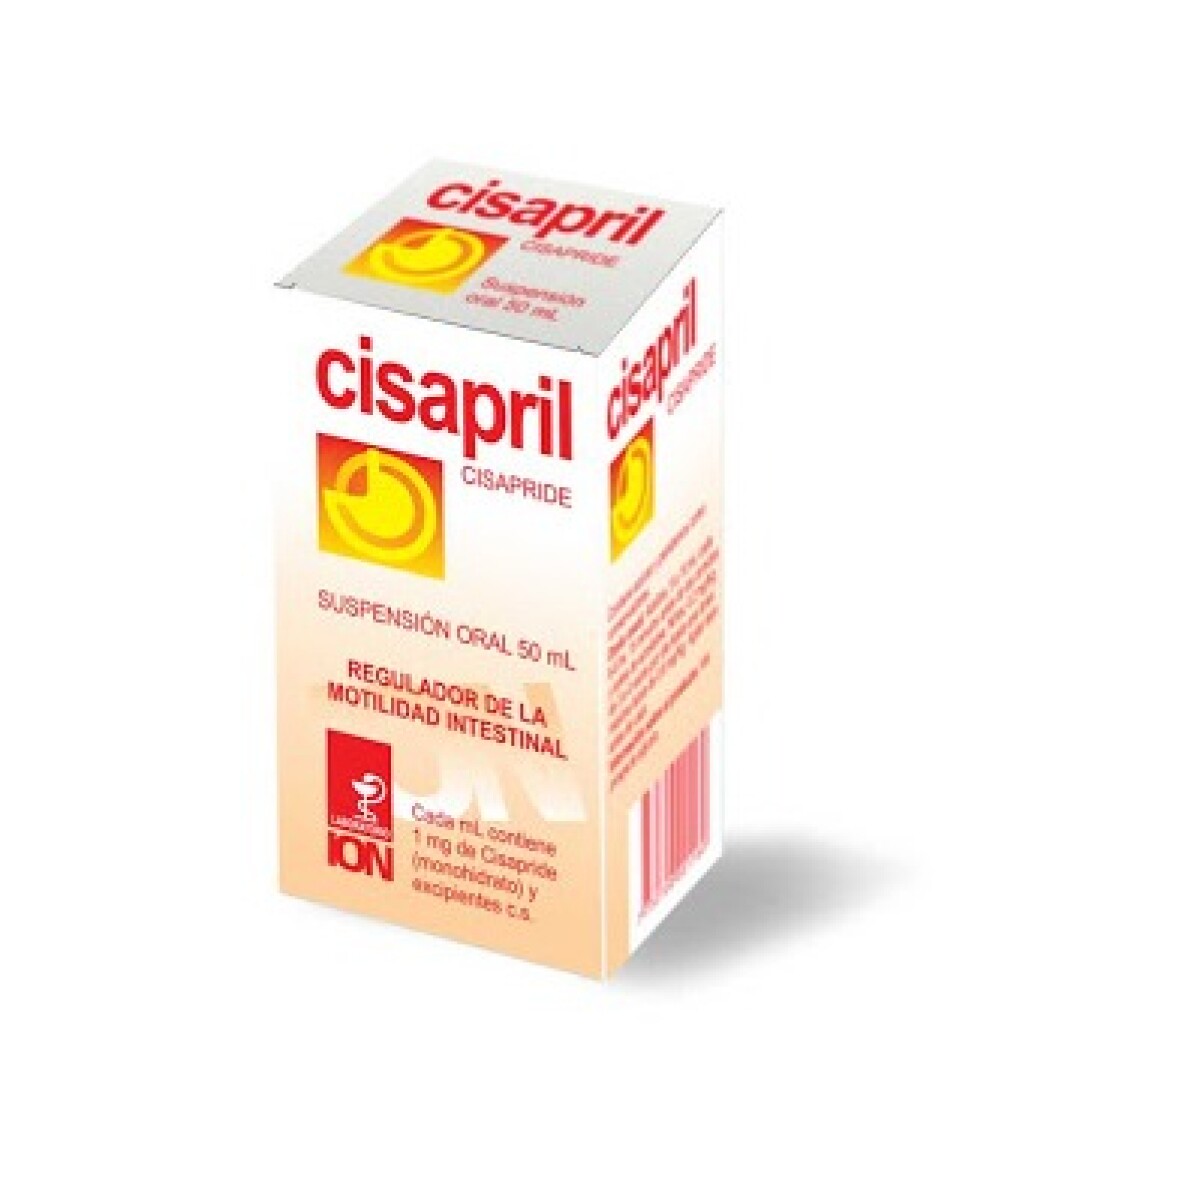 Cisapril Suspensión Oral 50 Ml. 